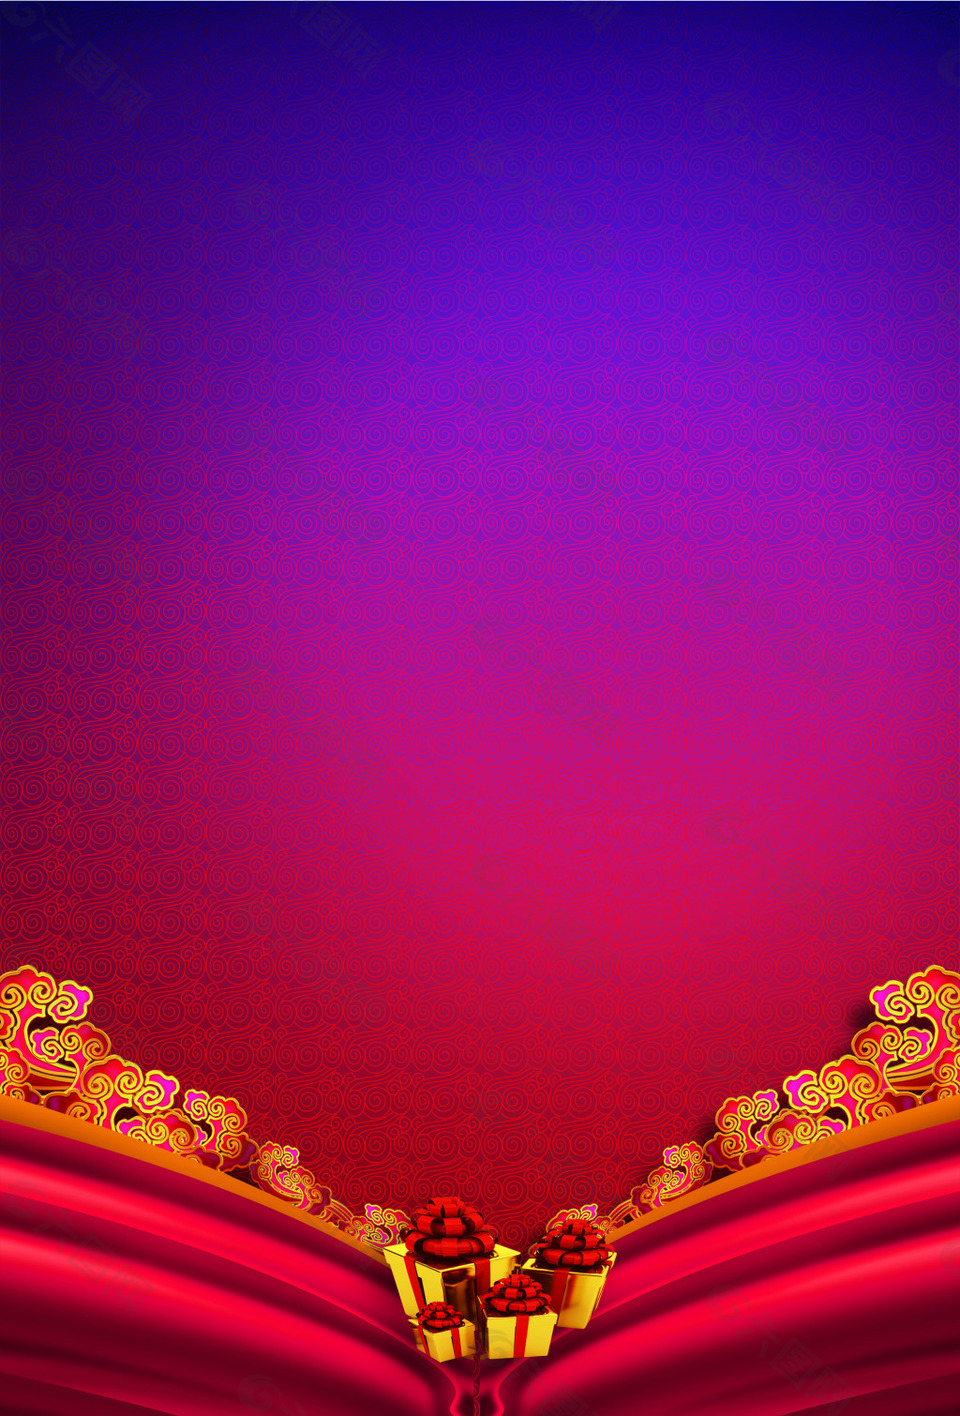 红紫色复古舞台帷幕渐变线条背景